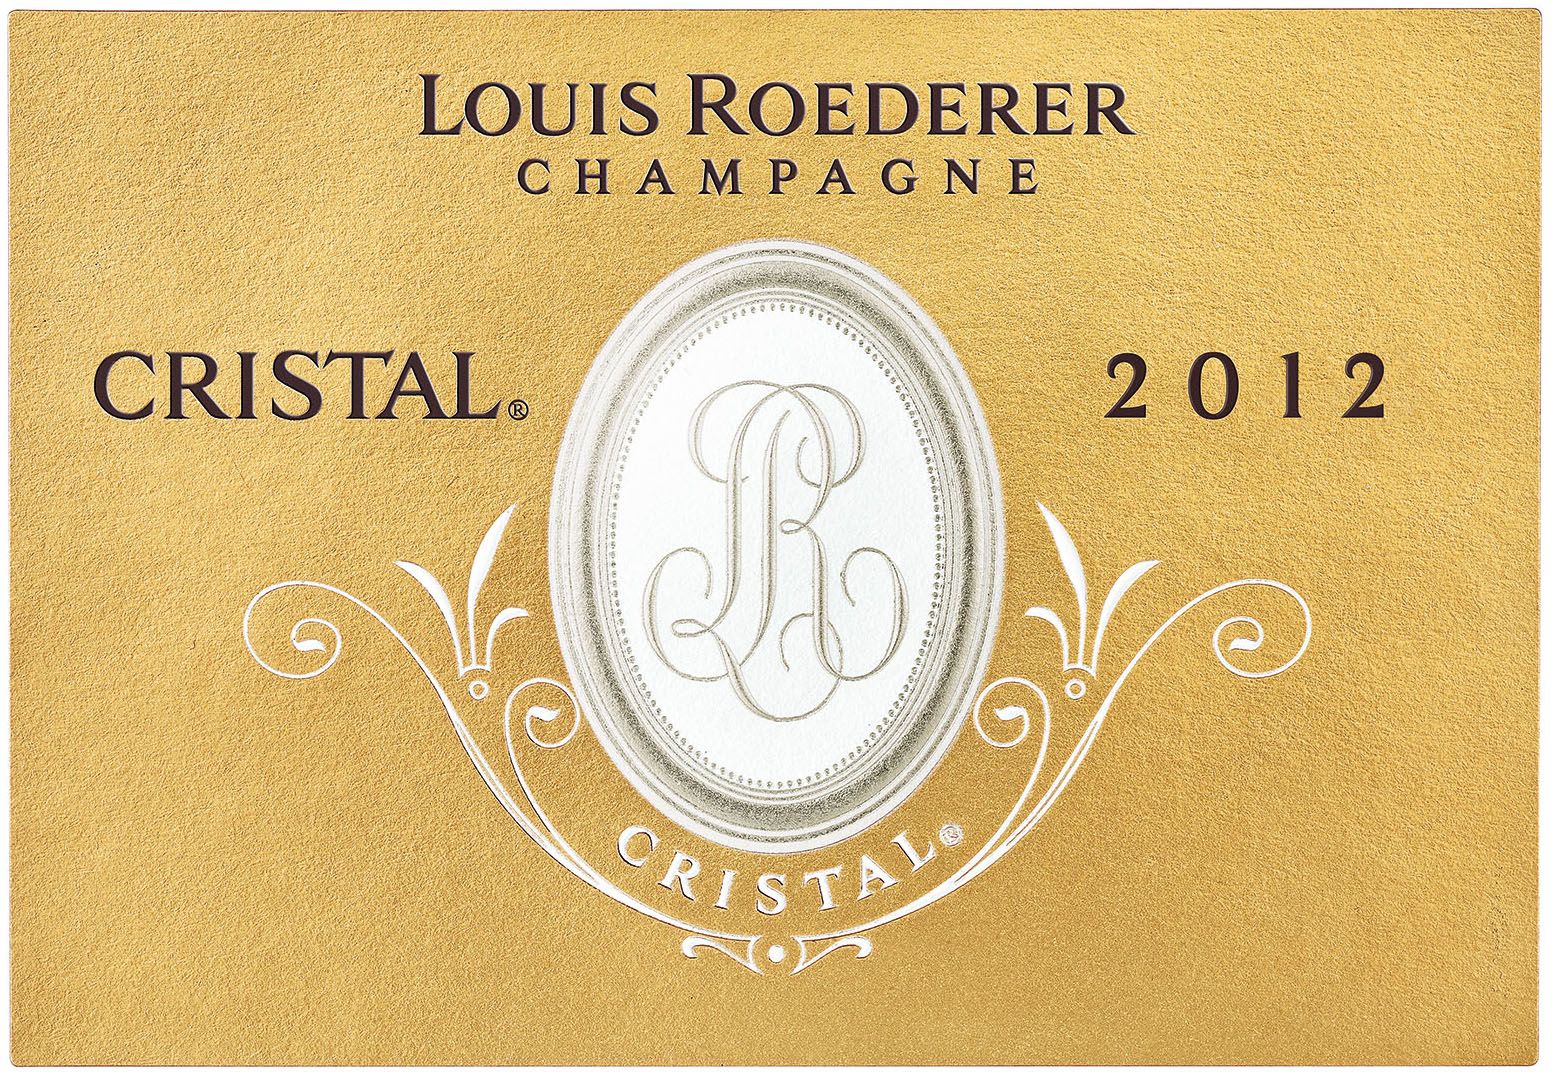 2012 Louis Roederer Cristal Brut Champagne - click image for full description